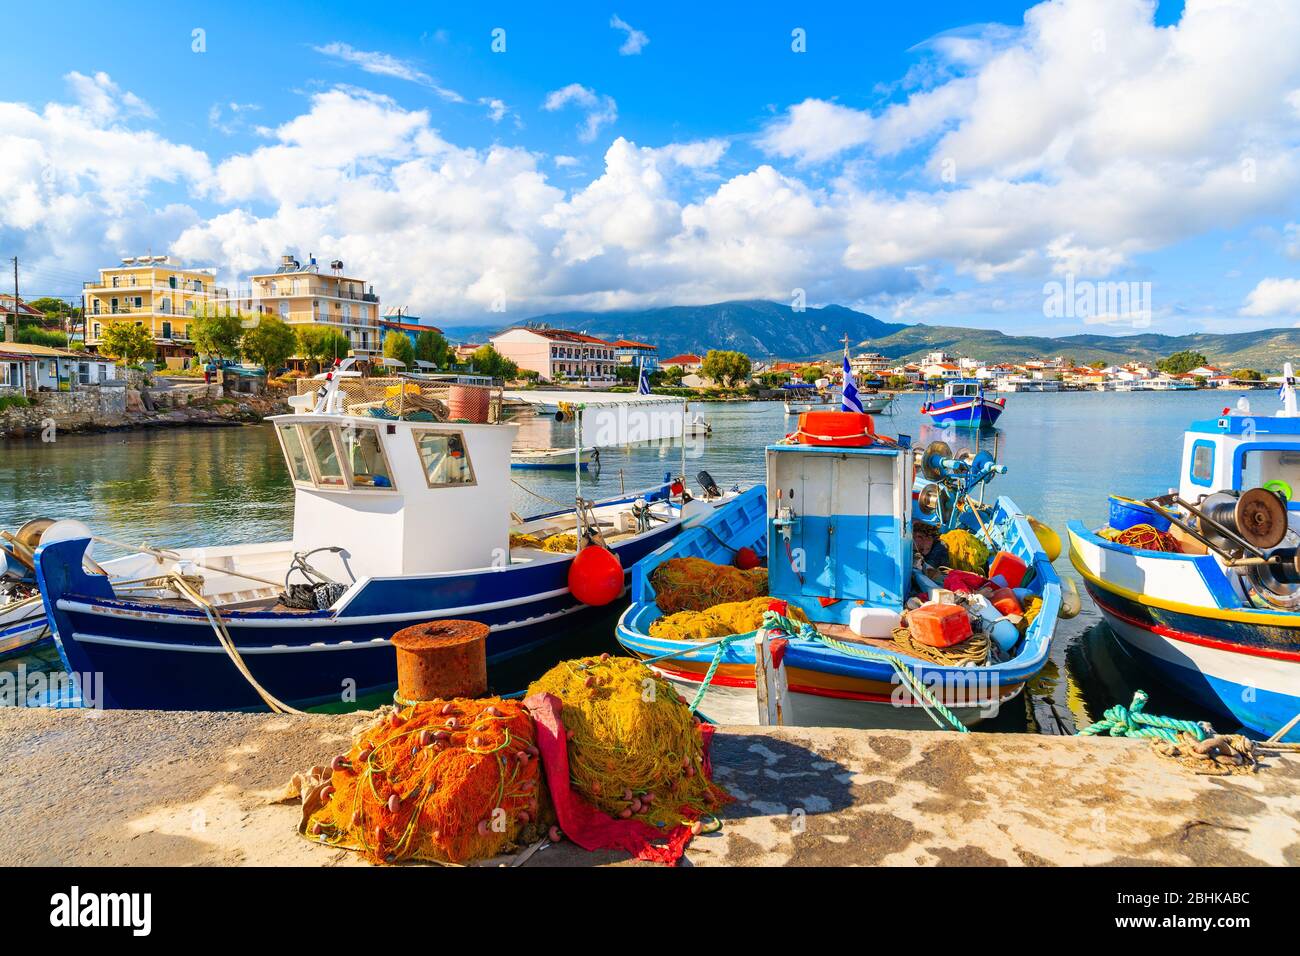 Griego coloridos barcos de pesca en el puerto de amarre en la isla de Samos, Grecia Foto de stock